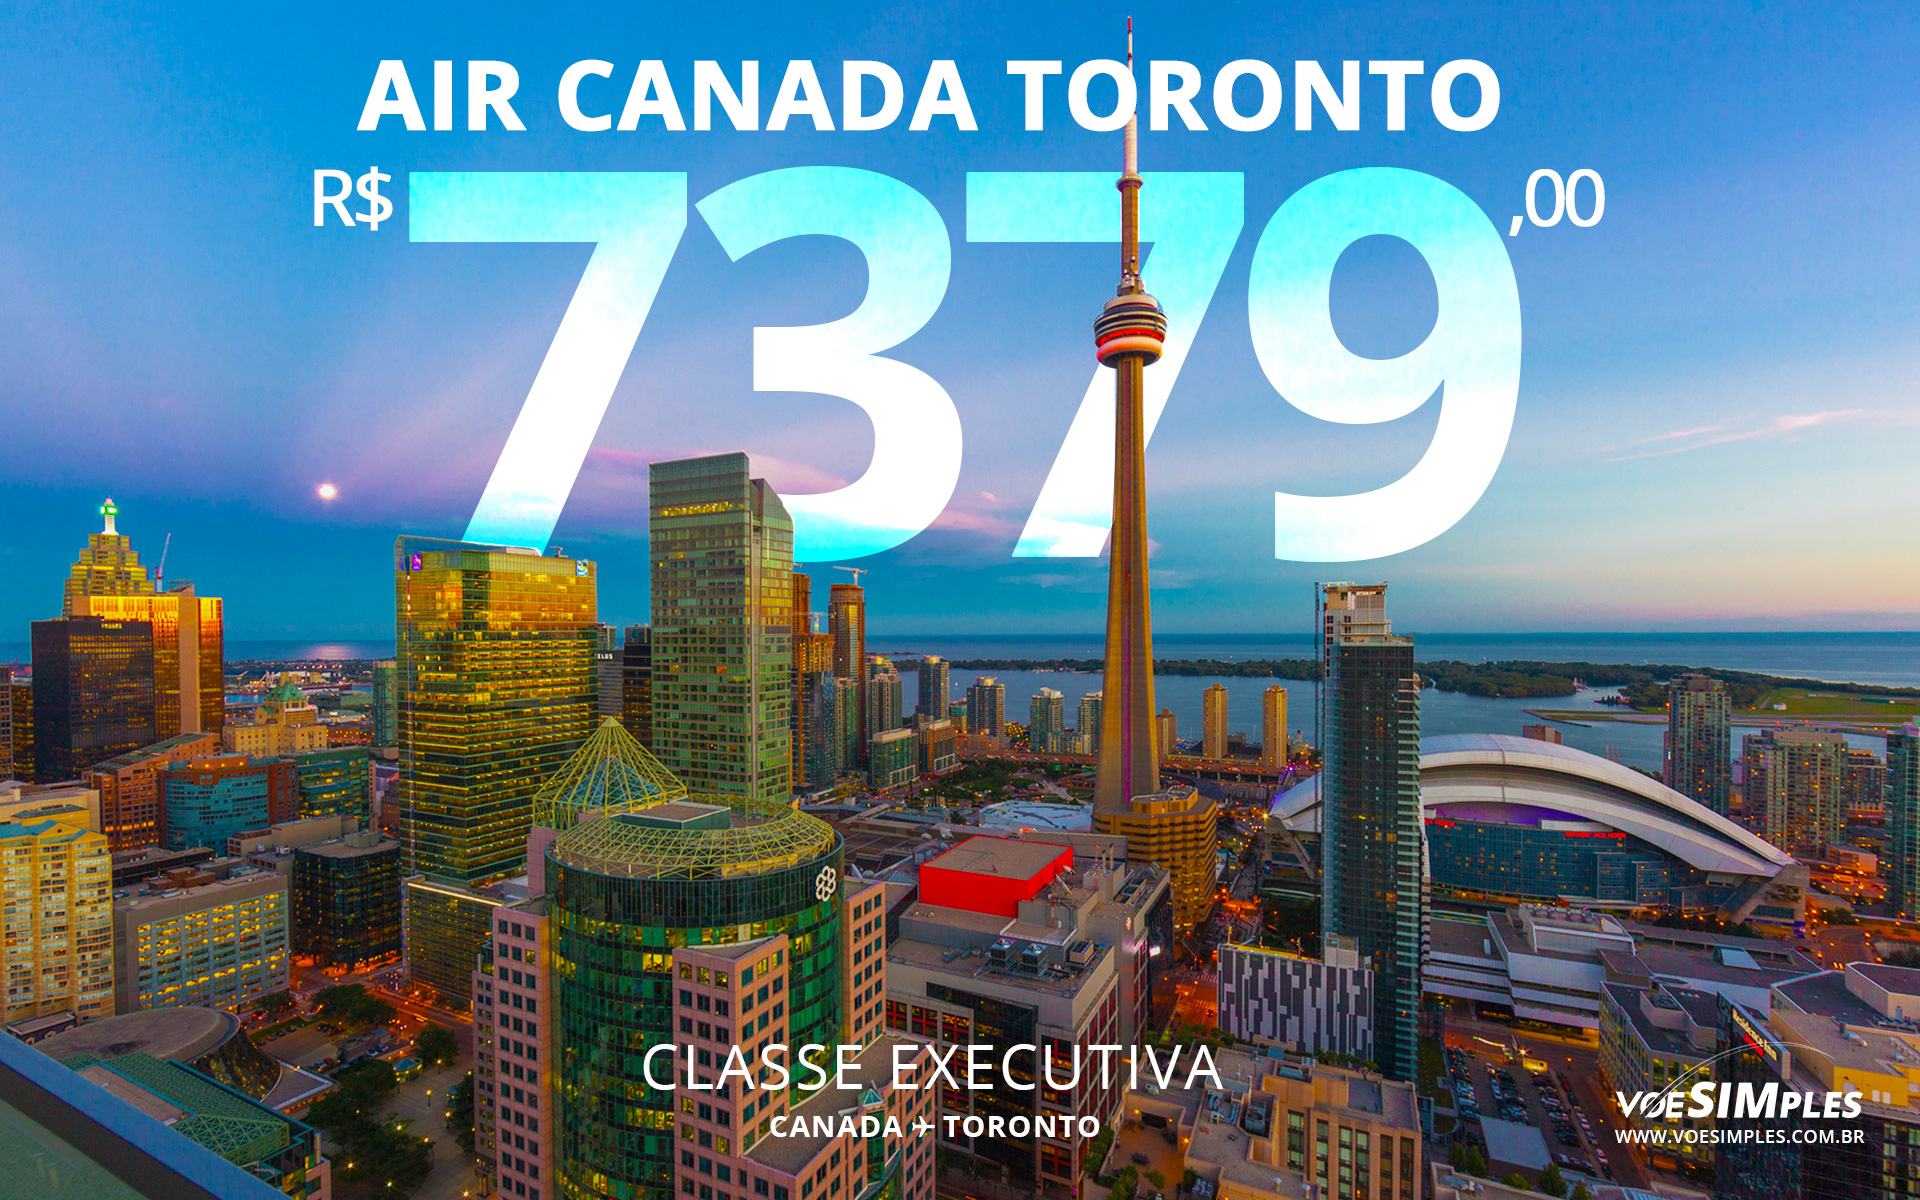 ️ Passagem Executiva Air Canada Com Voo Direto De São Paulo Para Toronto Por R 737900 Ida E 6316